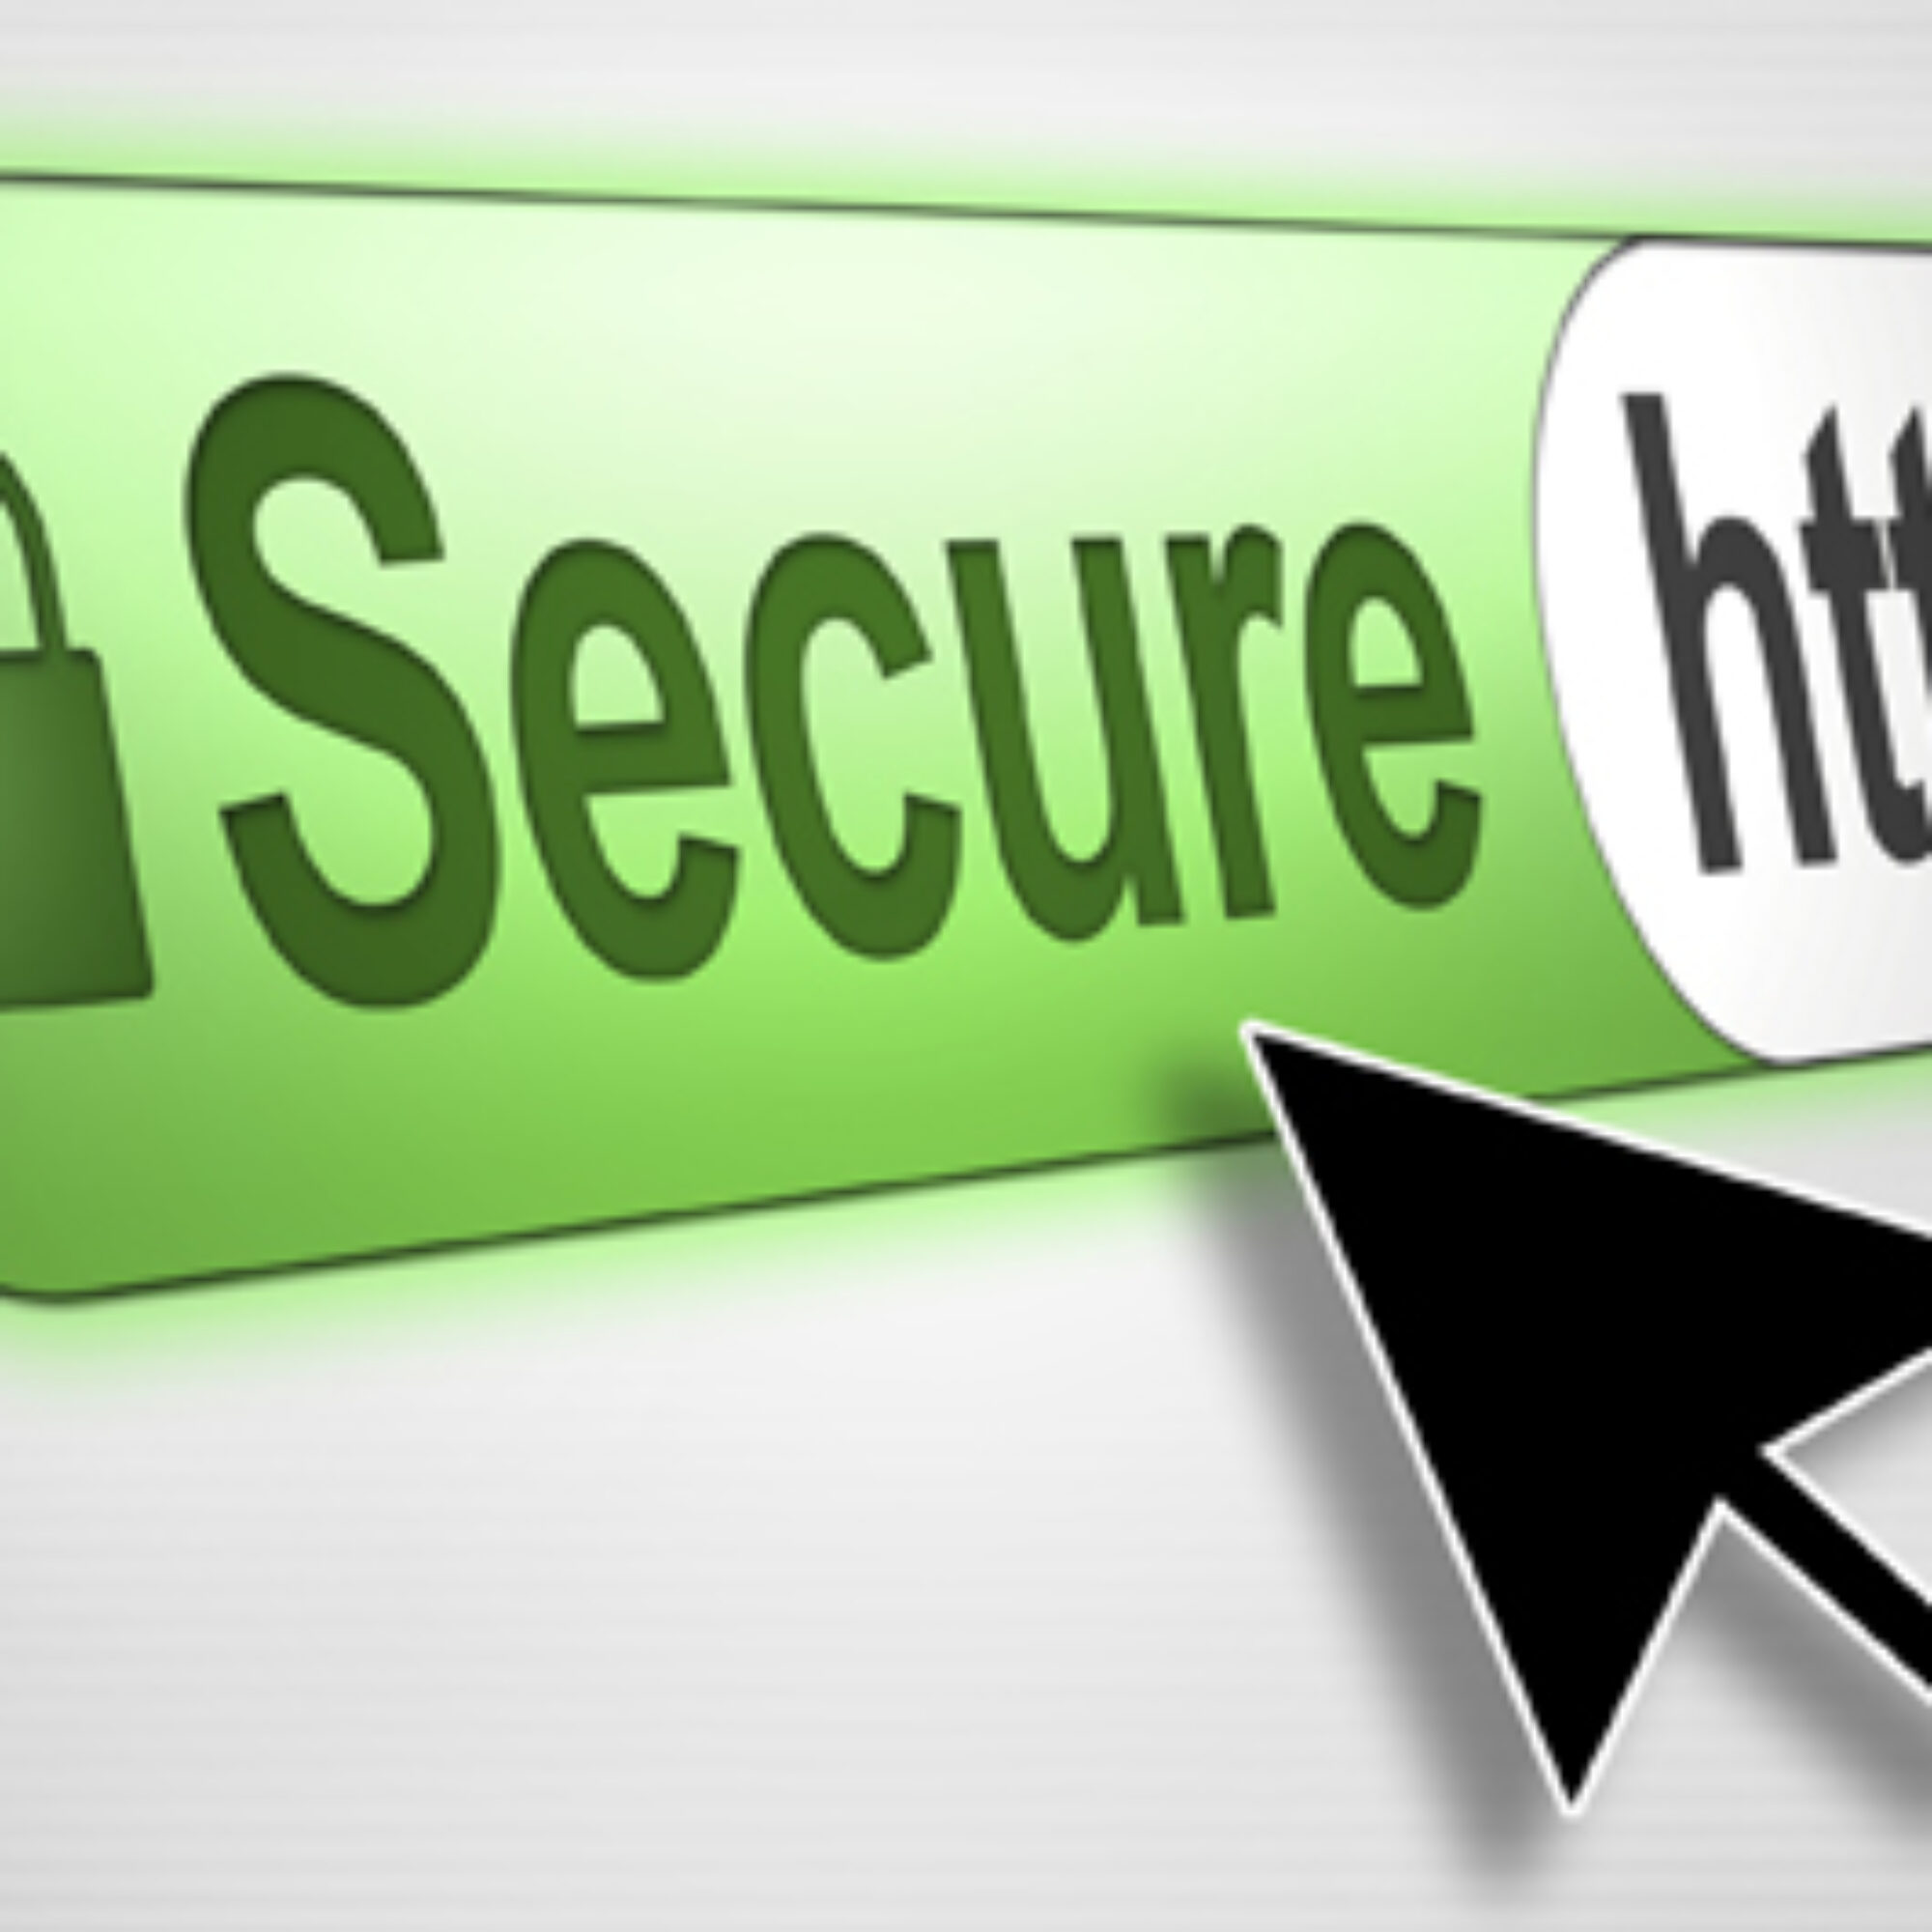 HTTPS et SEO : 8 sites sur 10 mal configurés selon Google